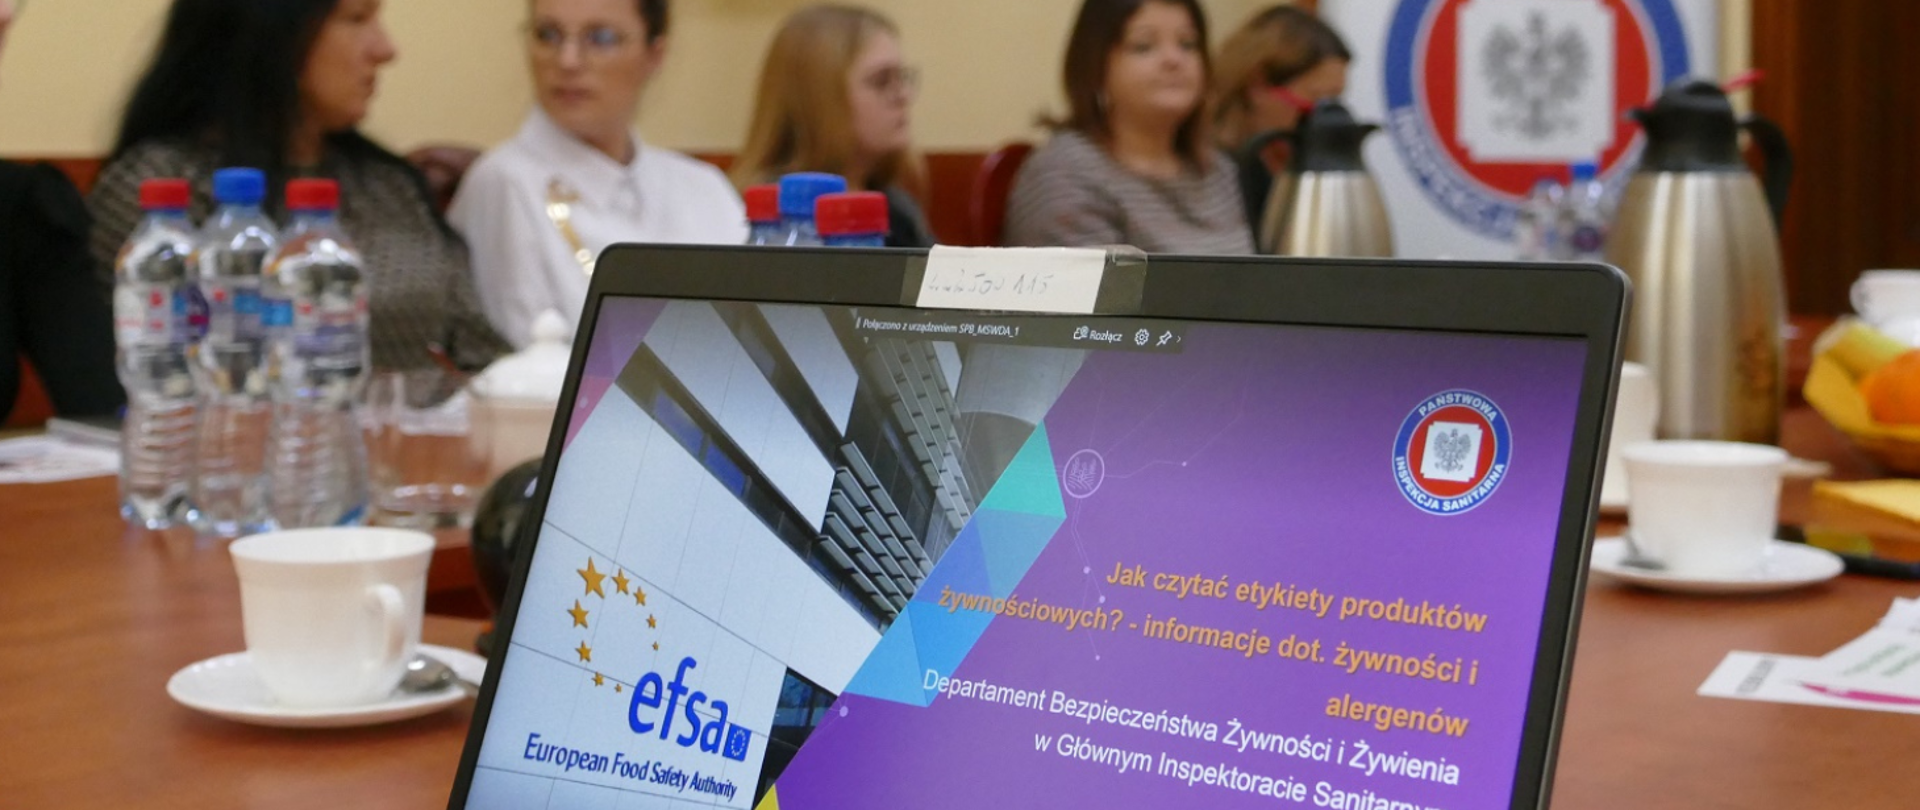 Szkolenie EFSA "Wybieraj bezpieczną żywność" w Starostwie Powiatowym w Brodnicy 9.11.2022 r.